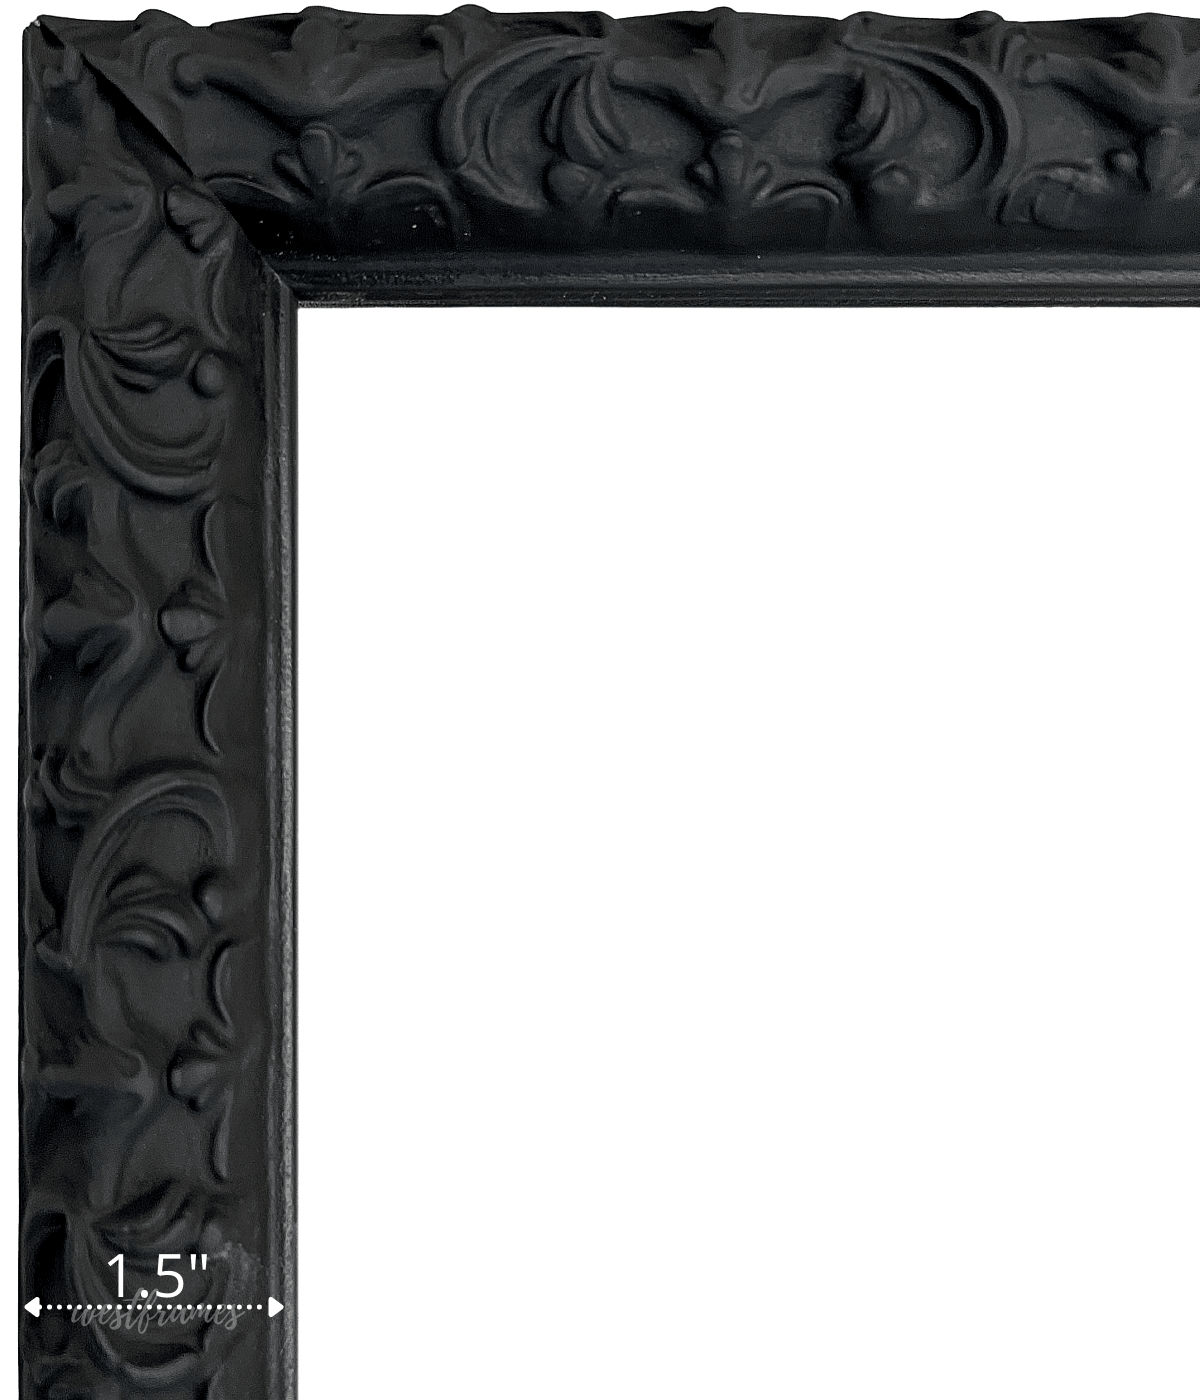 Penelope Gothic Black Ornate Vintage Victorian Embossed Wood Picture Frame 1.5" Wide - West Frames